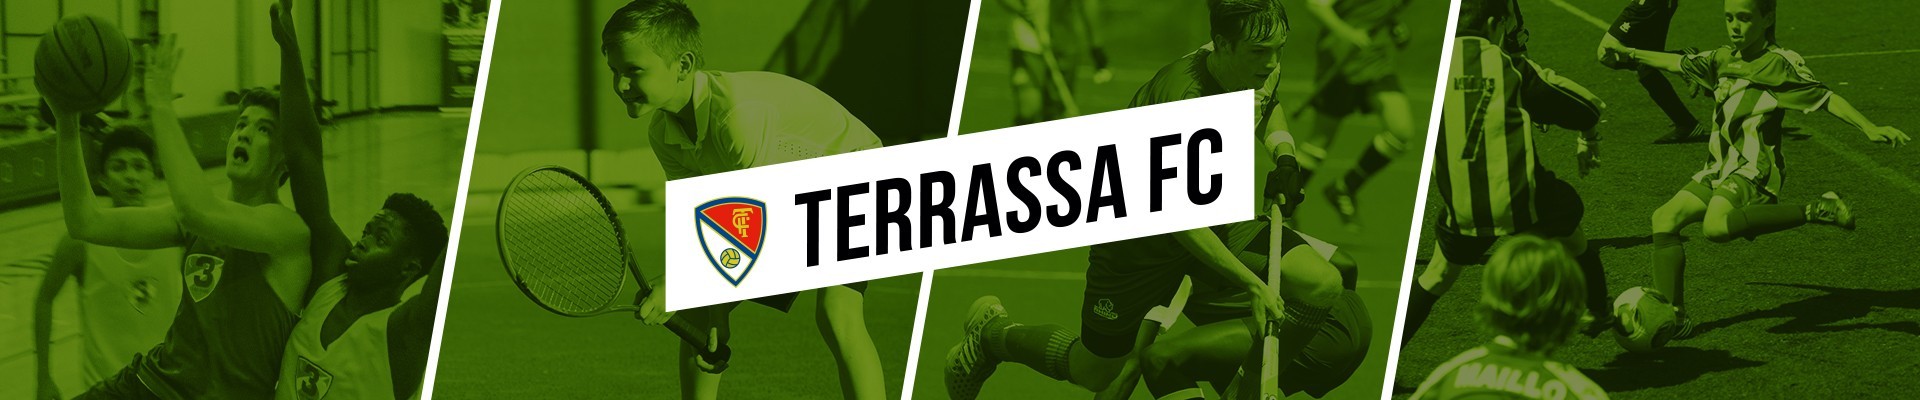 TERRASSA FC